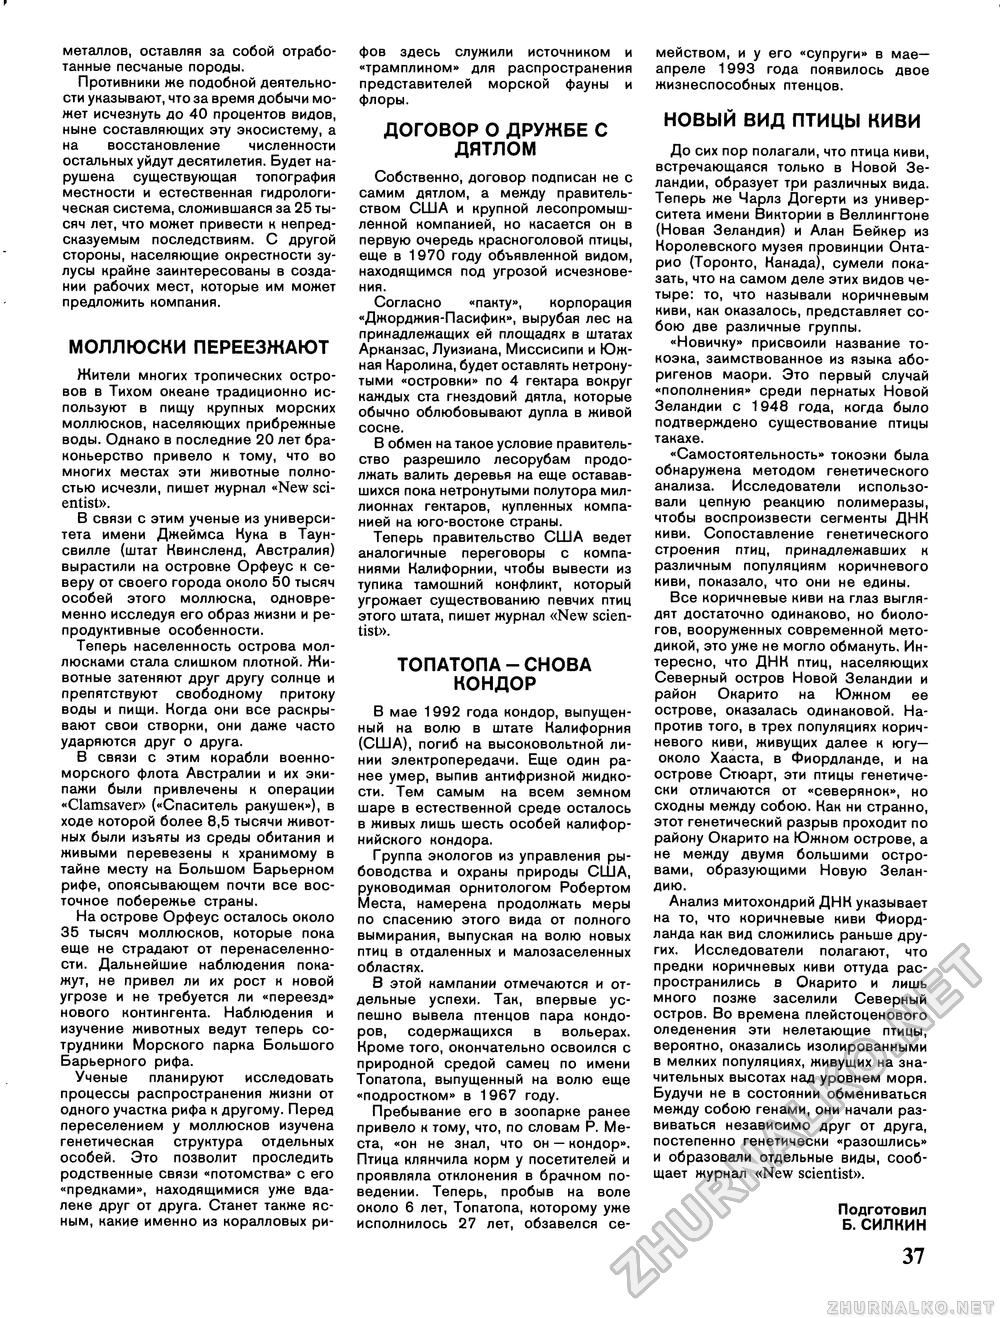 Вокруг света 1993-12, страница 39